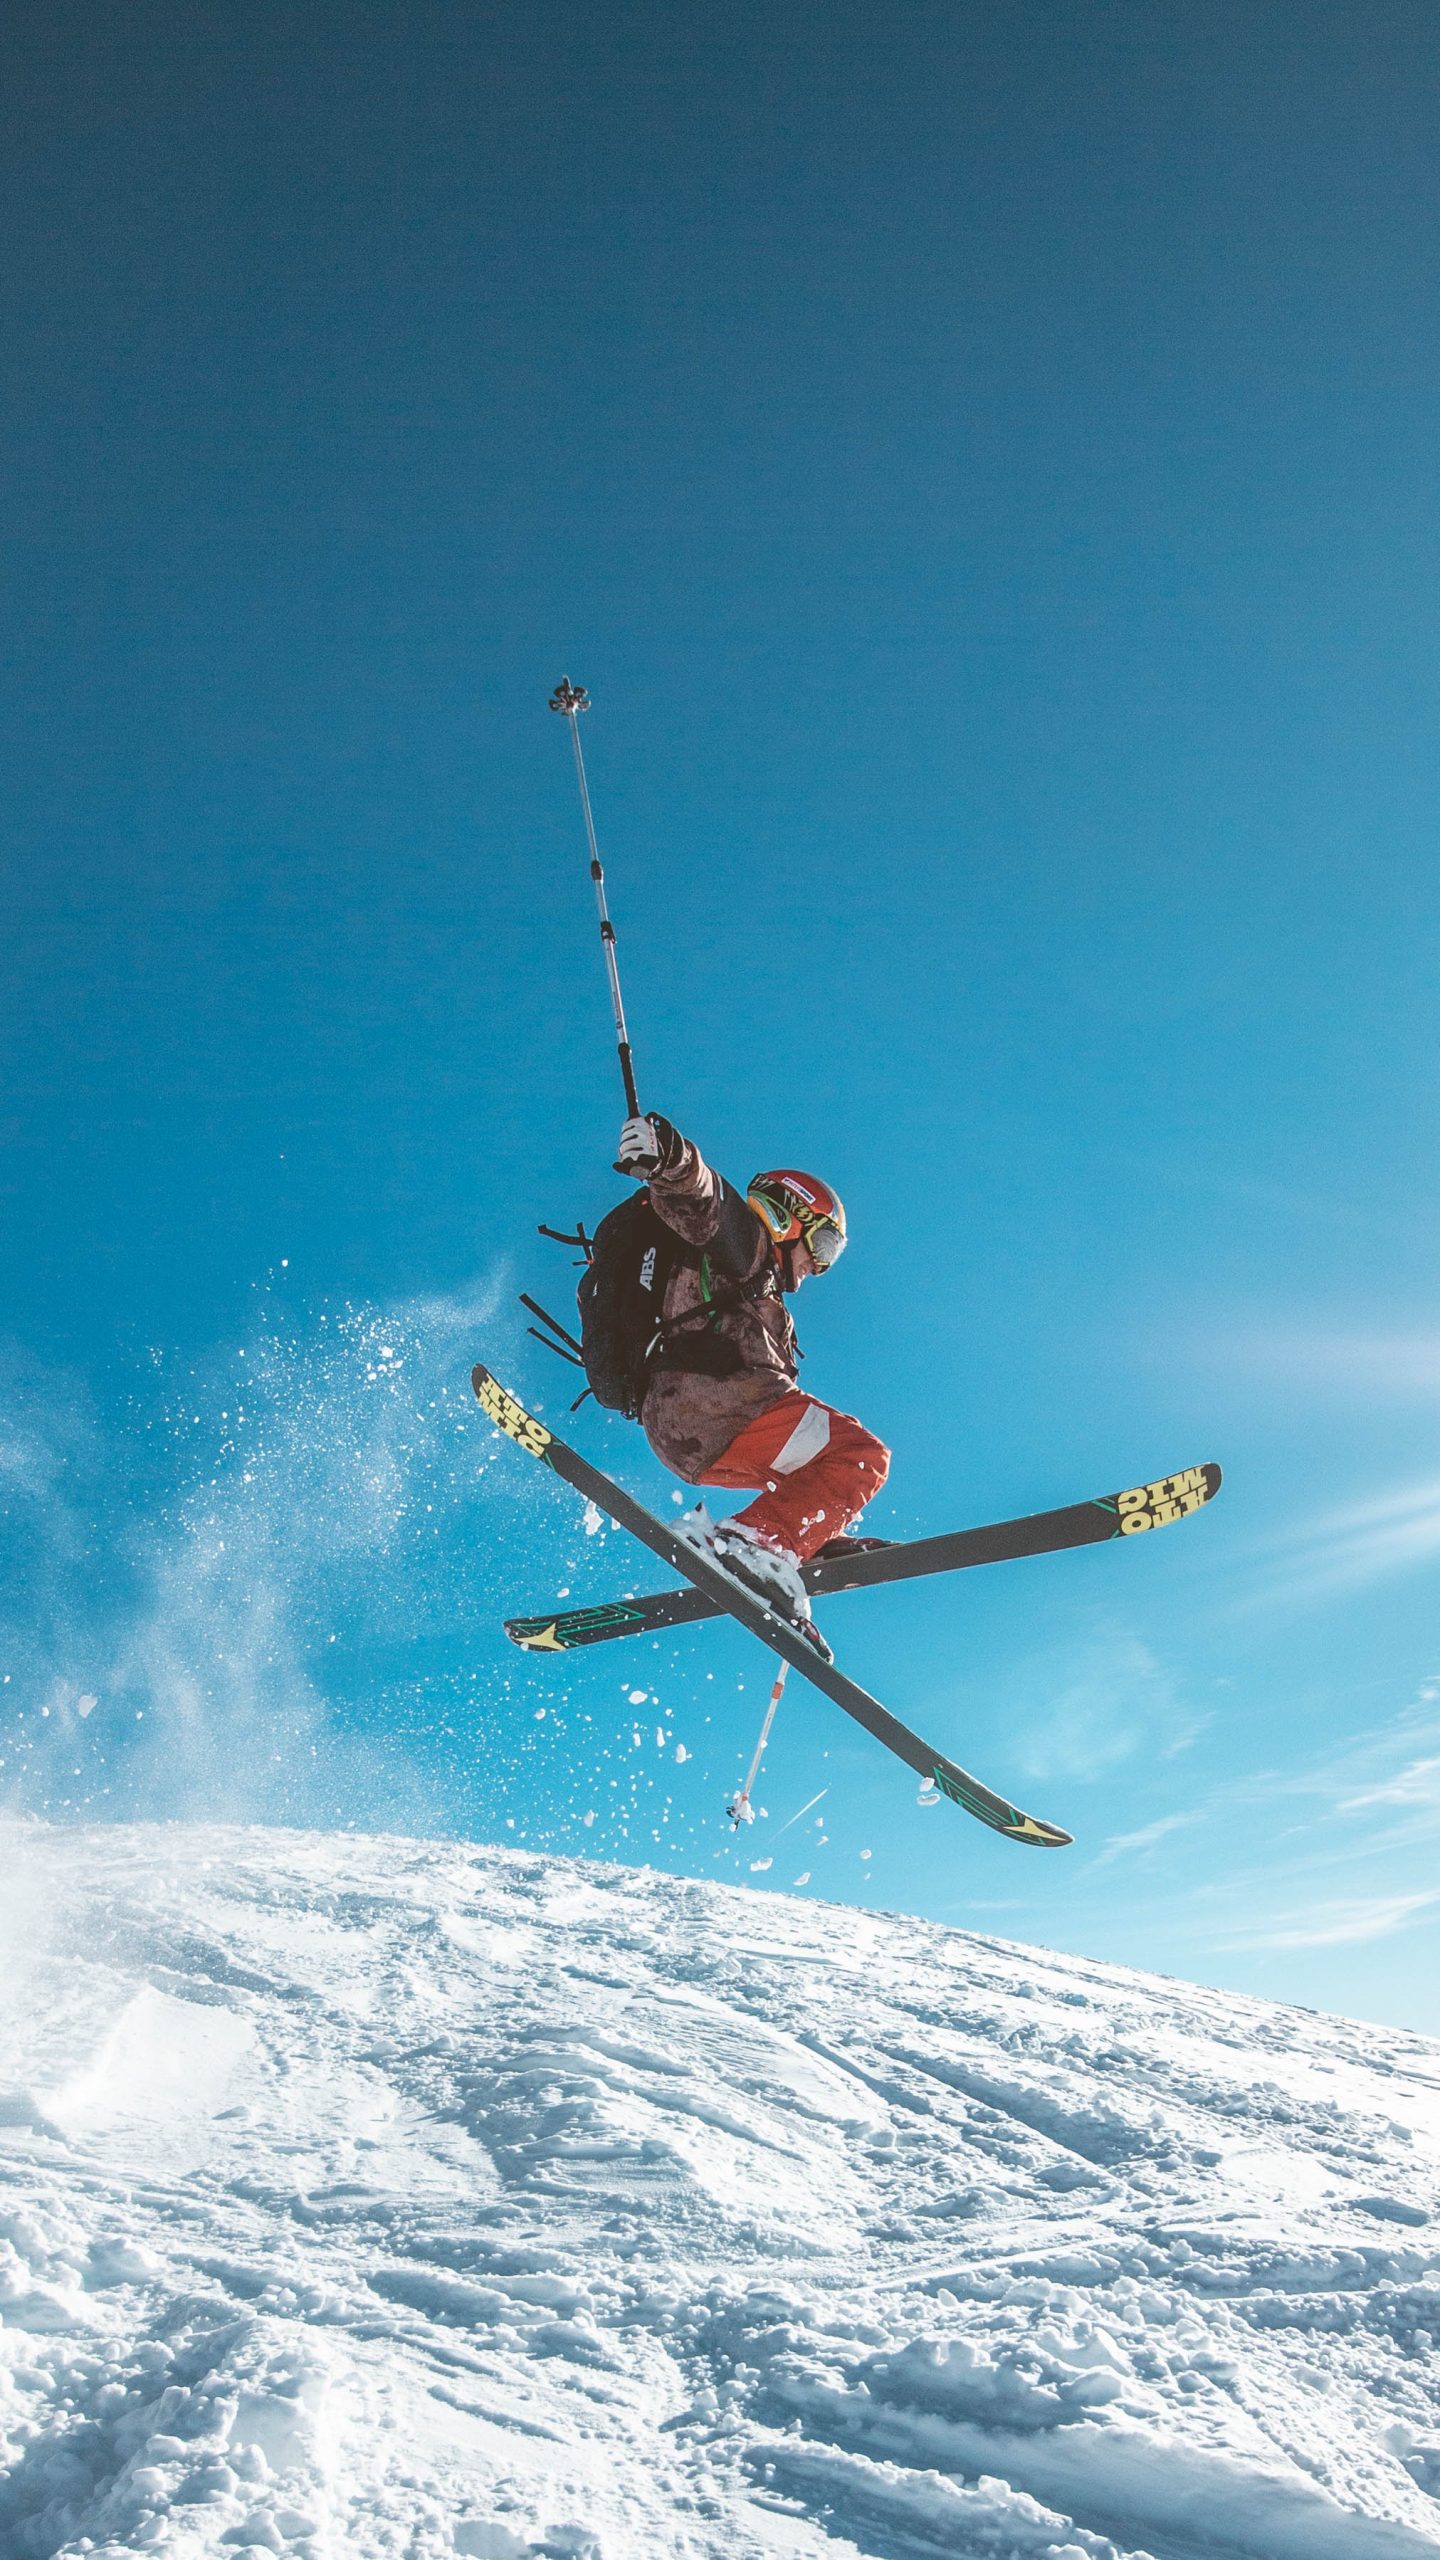 Man skiing on land